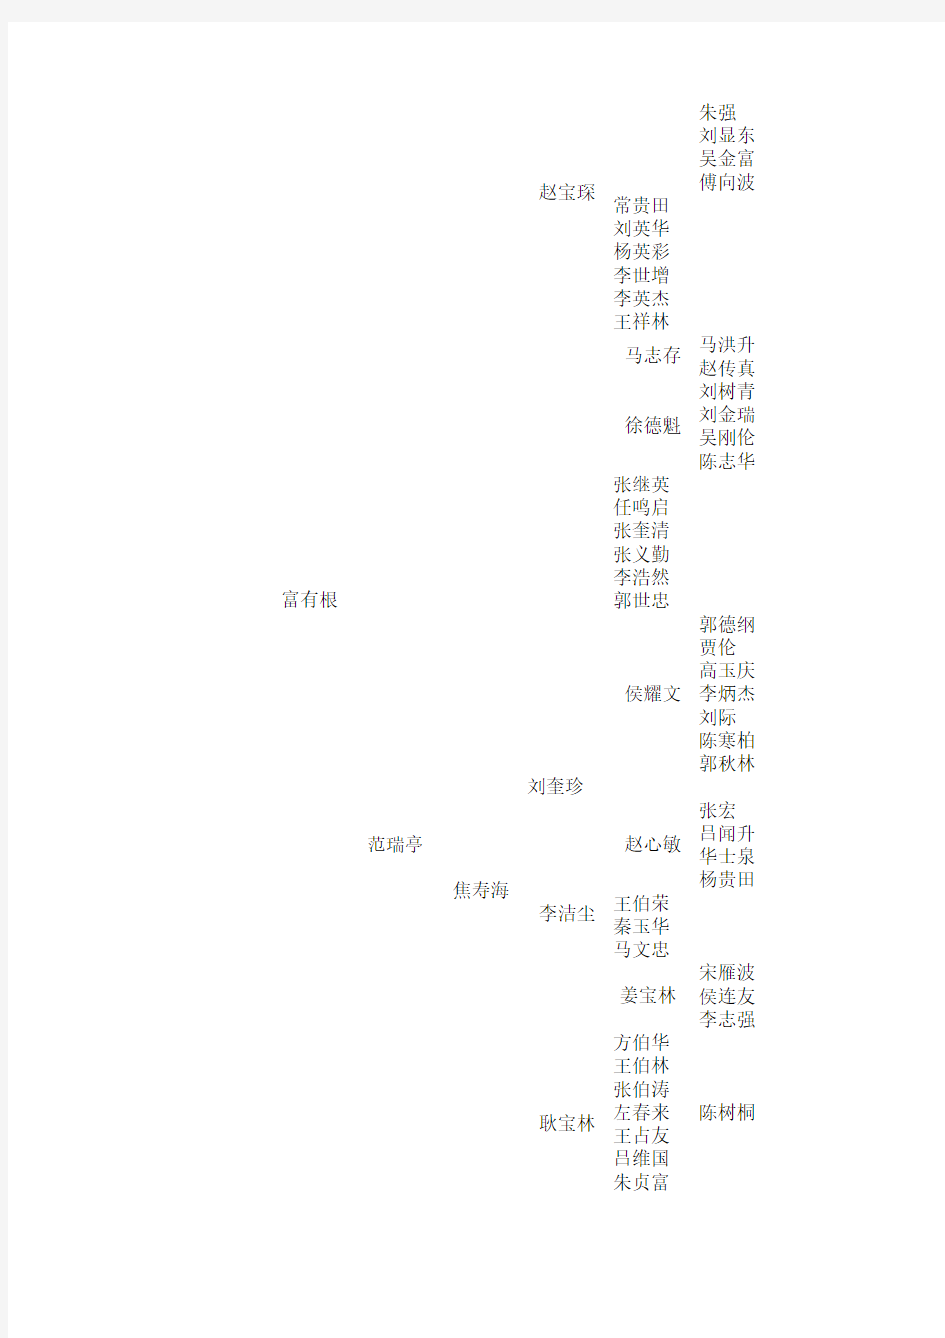 中国相声族谱一至八代树状图